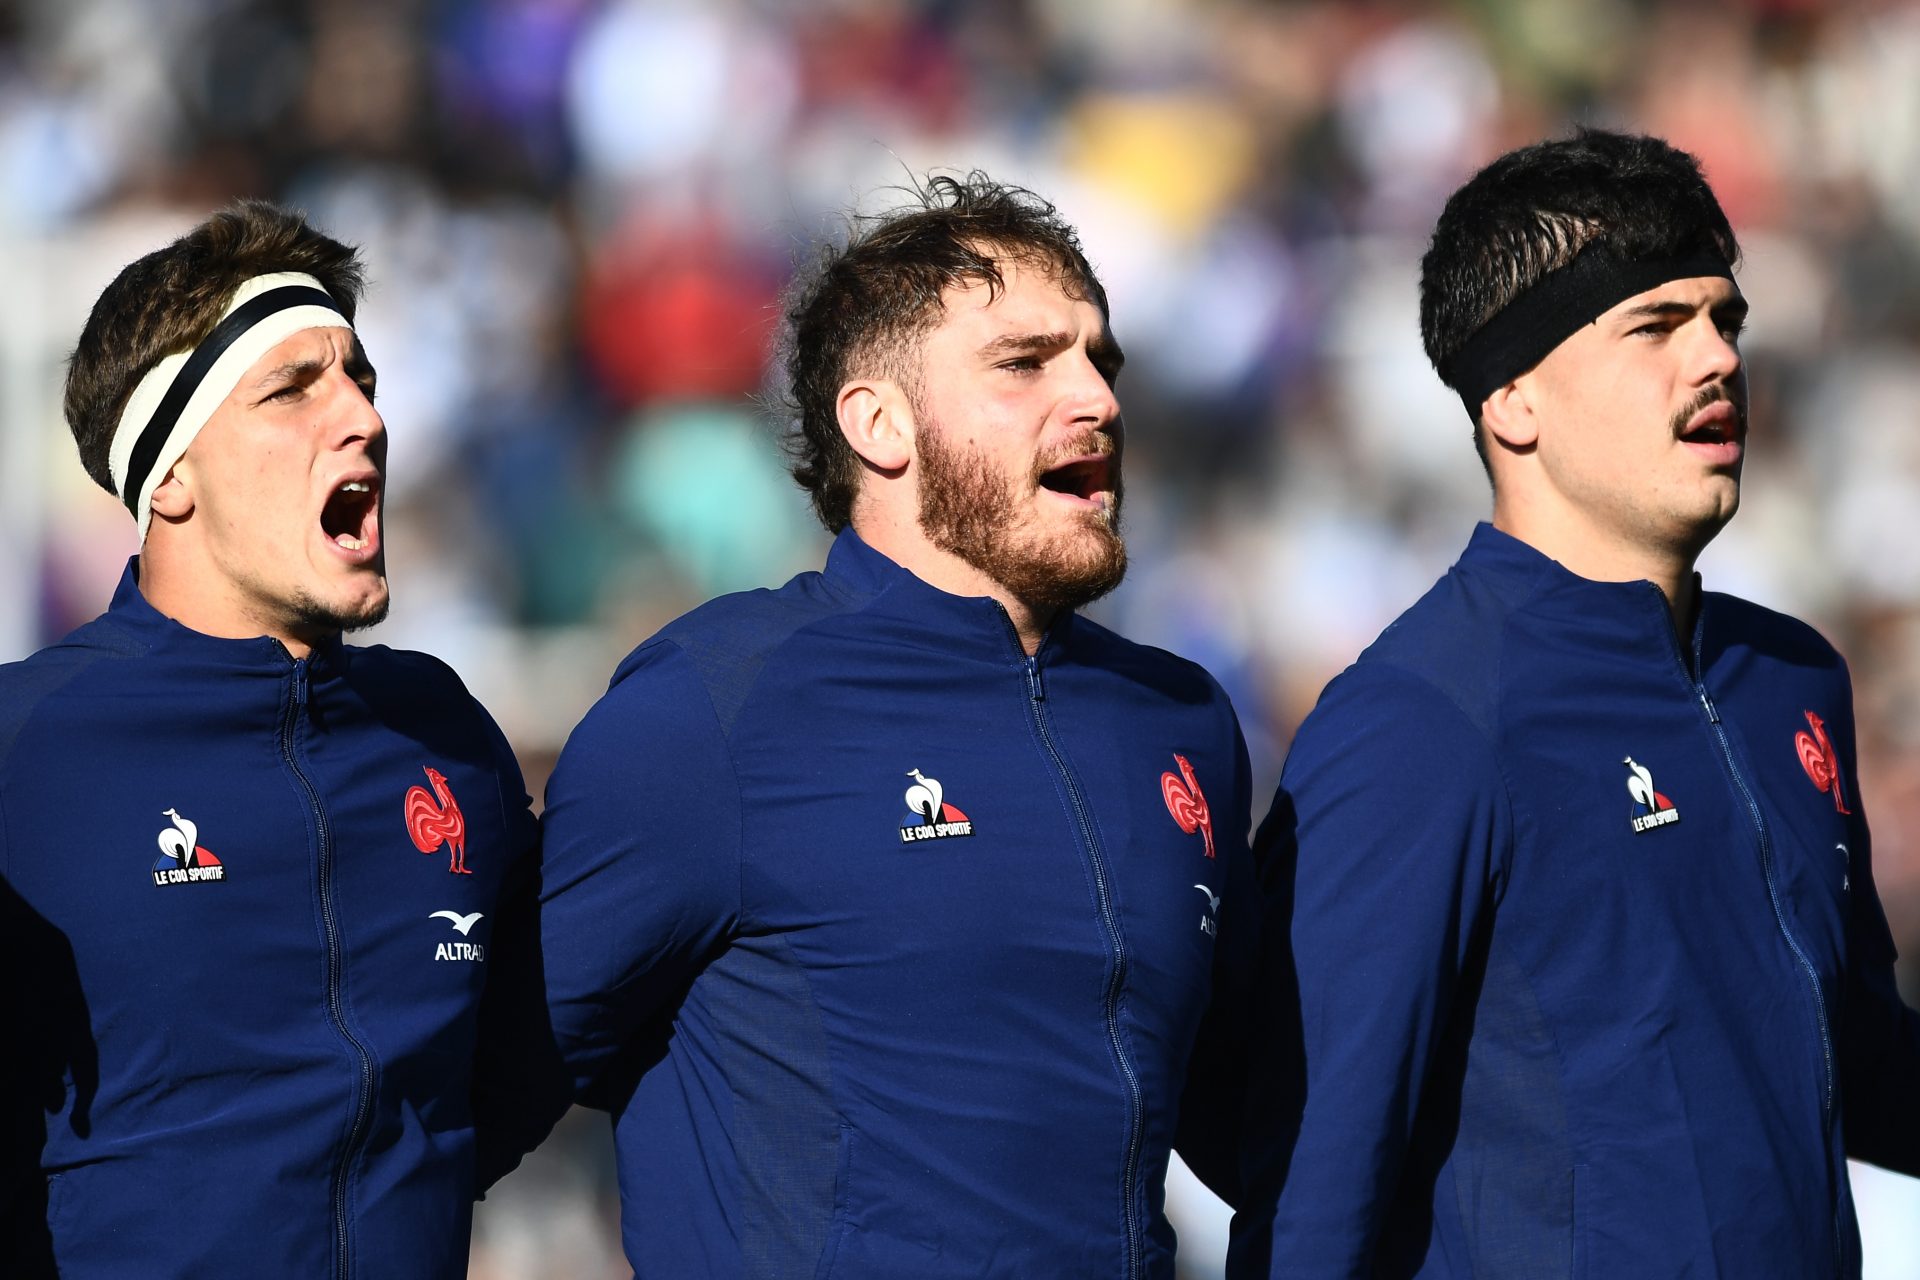 Le rugby français en plein scandale